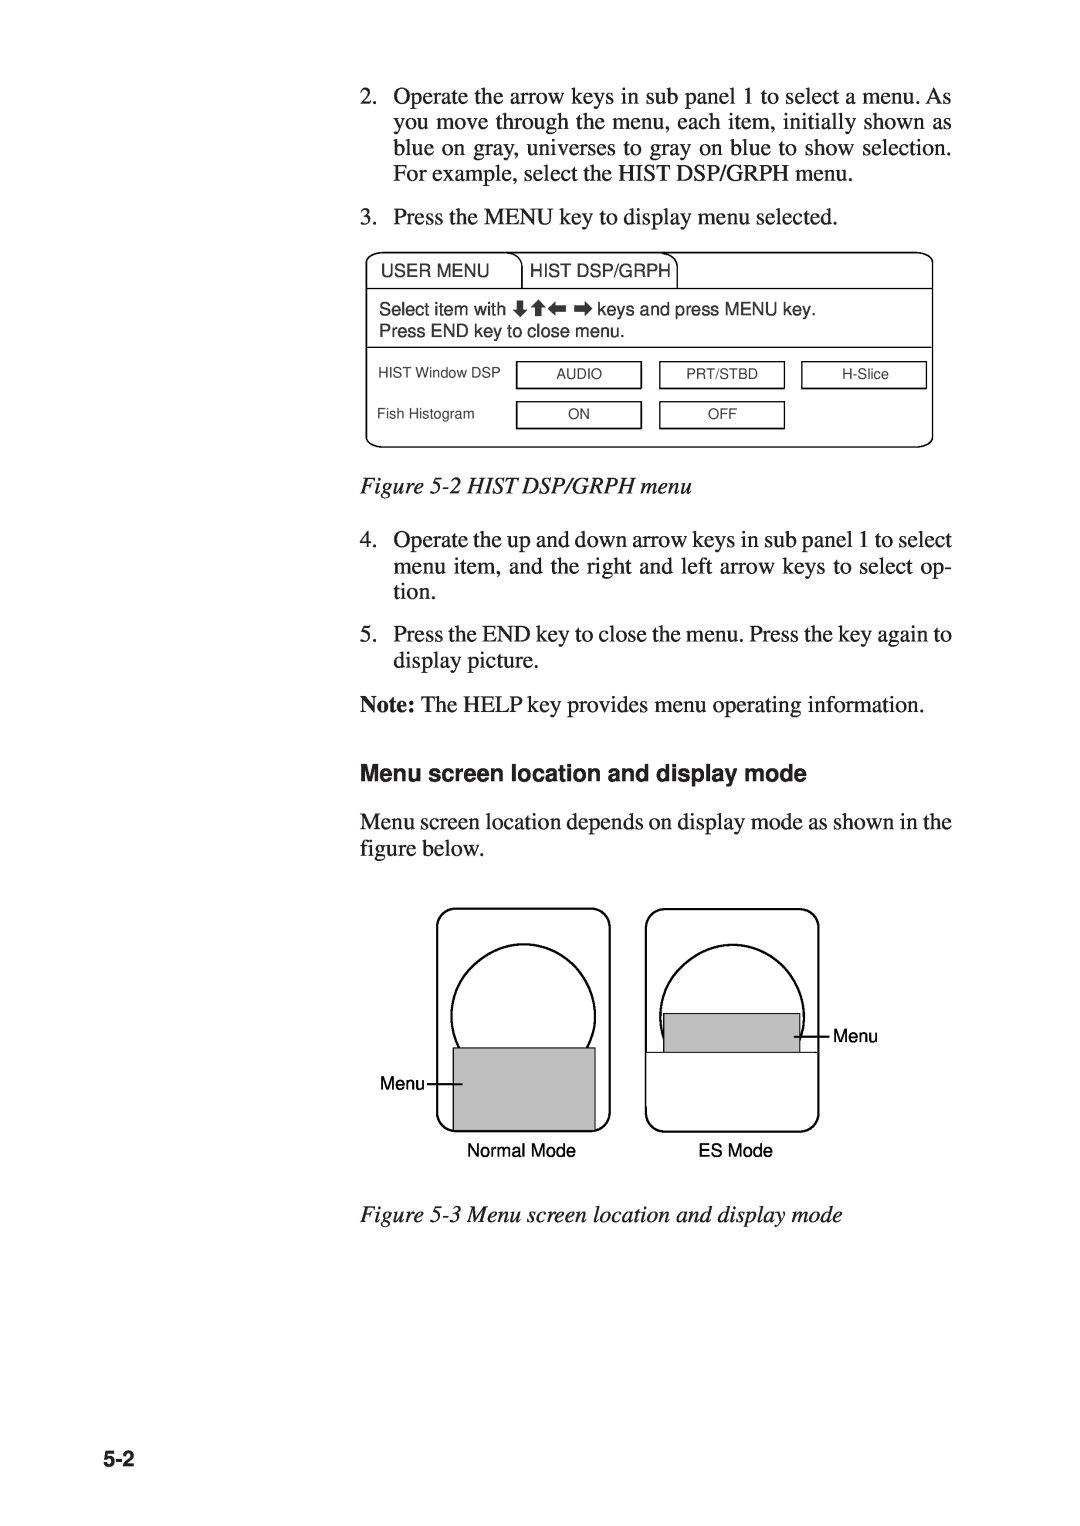 Furuno CSH-53 manual 2 HIST DSP/GRPH menu, 3 Menu screen location and display mode 